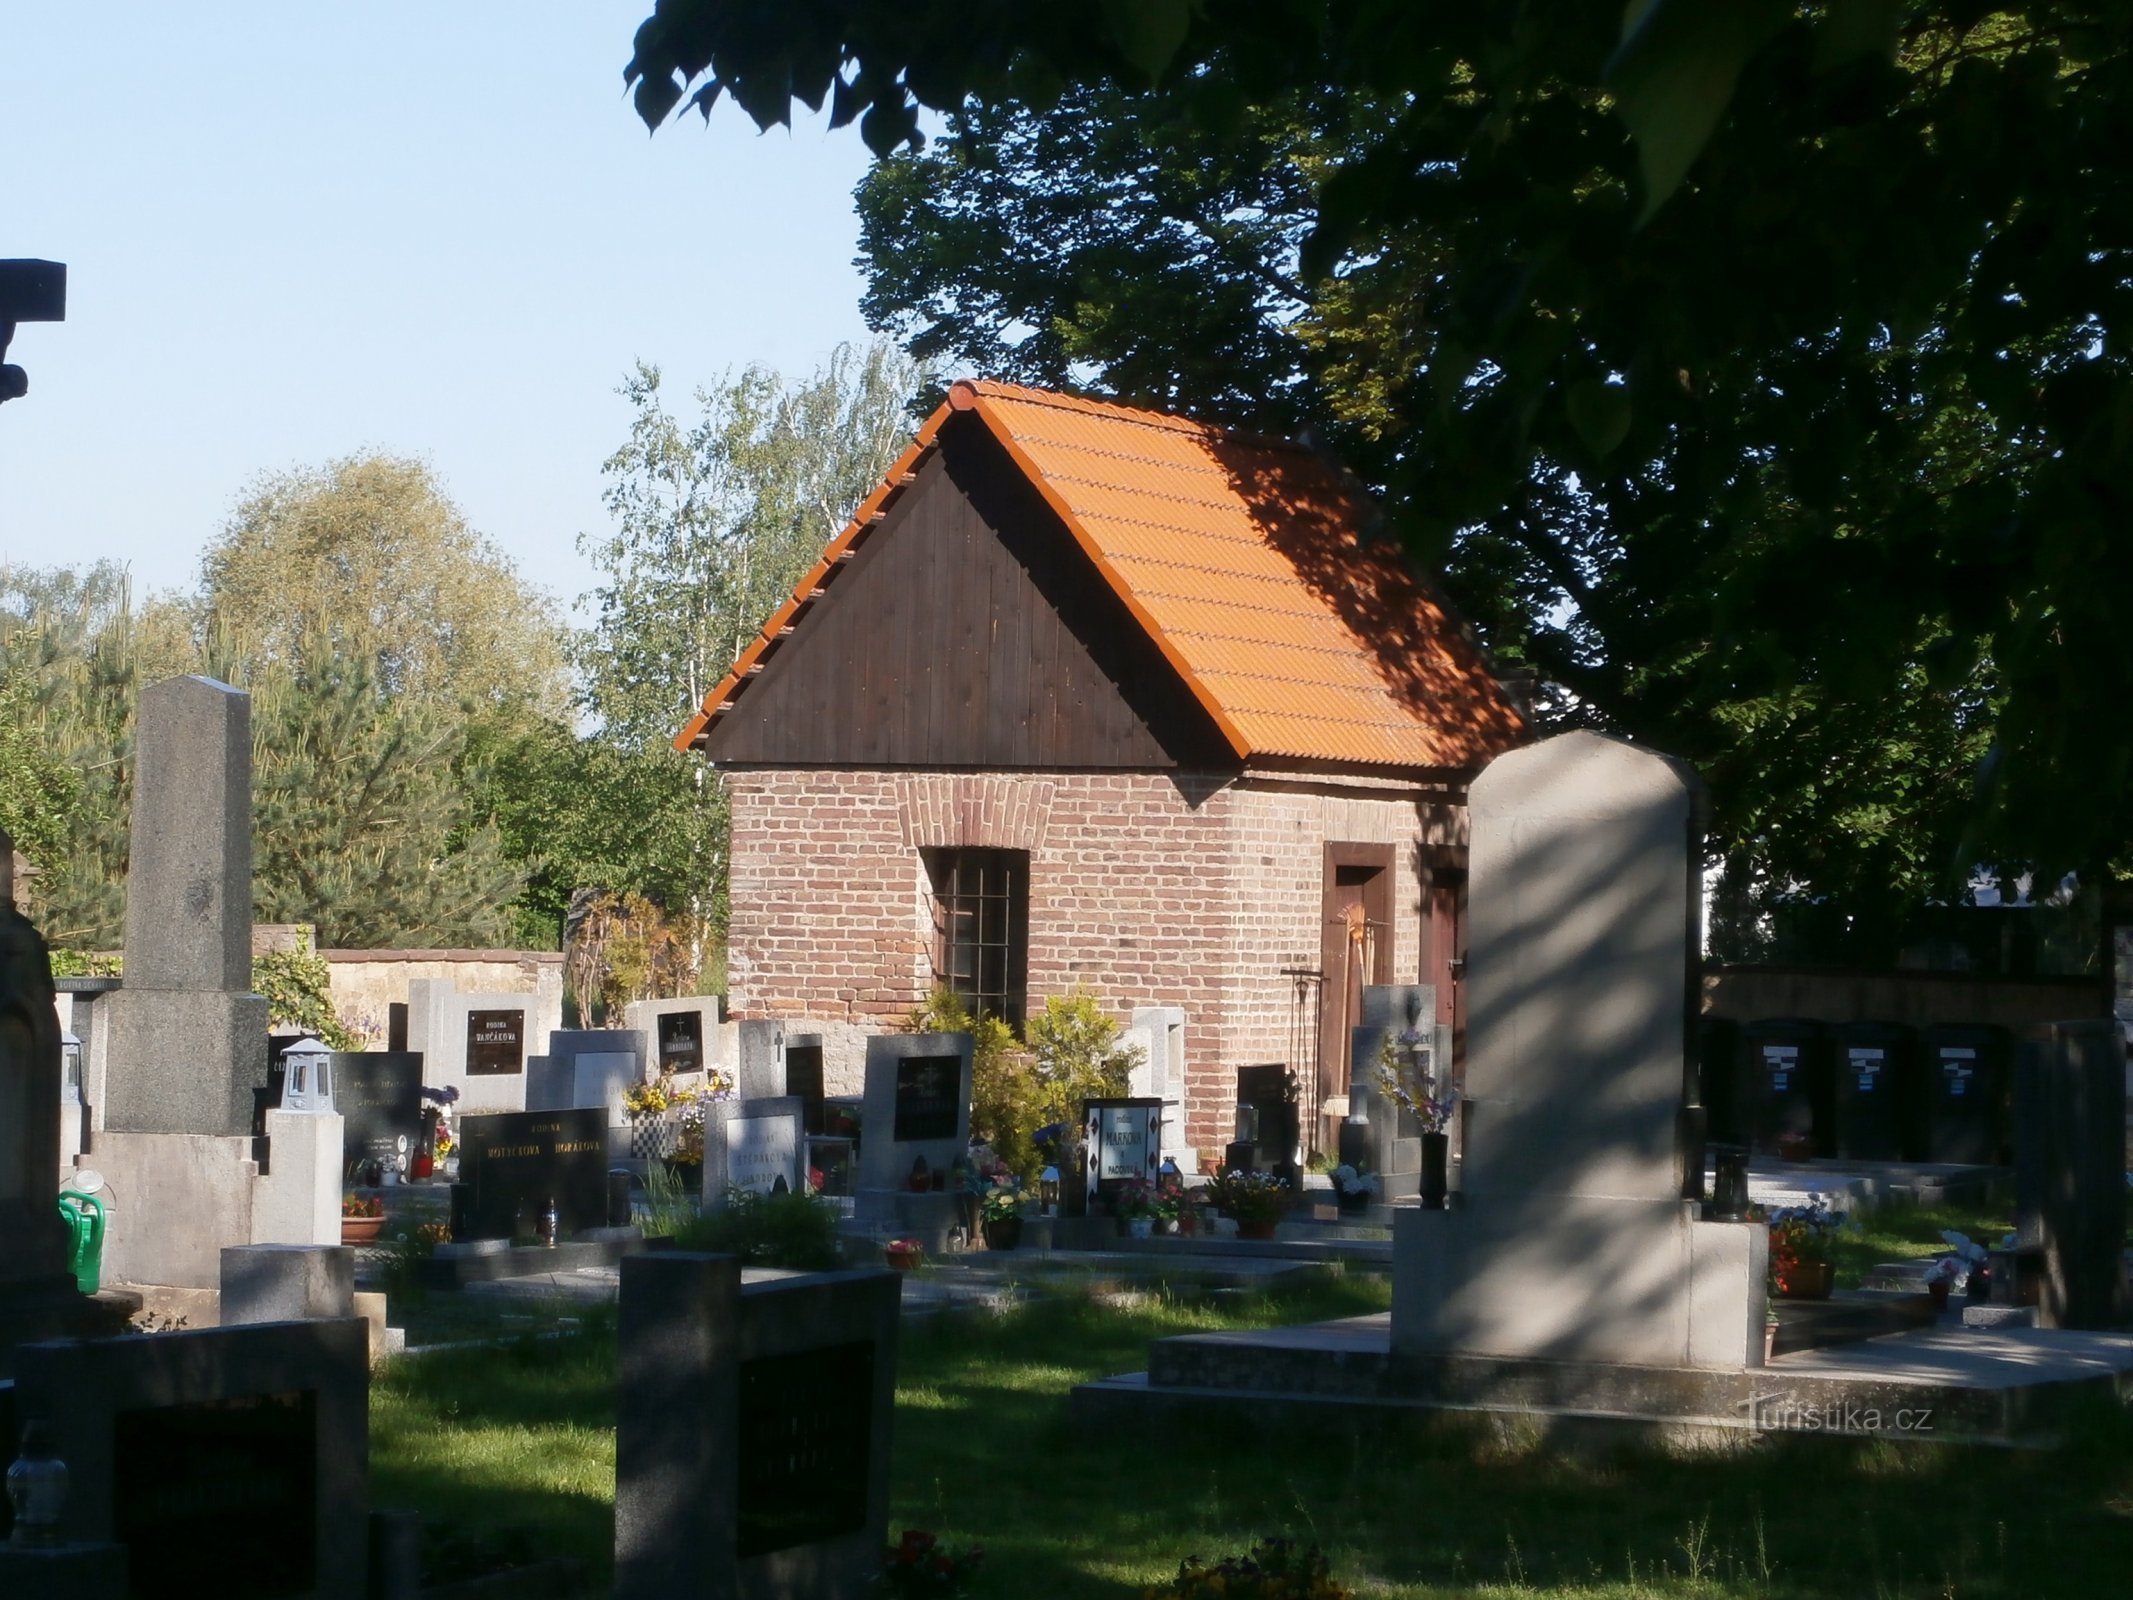 Hřbitov v Malšově Lhotě (Hradec Králové, 28.5.2017)